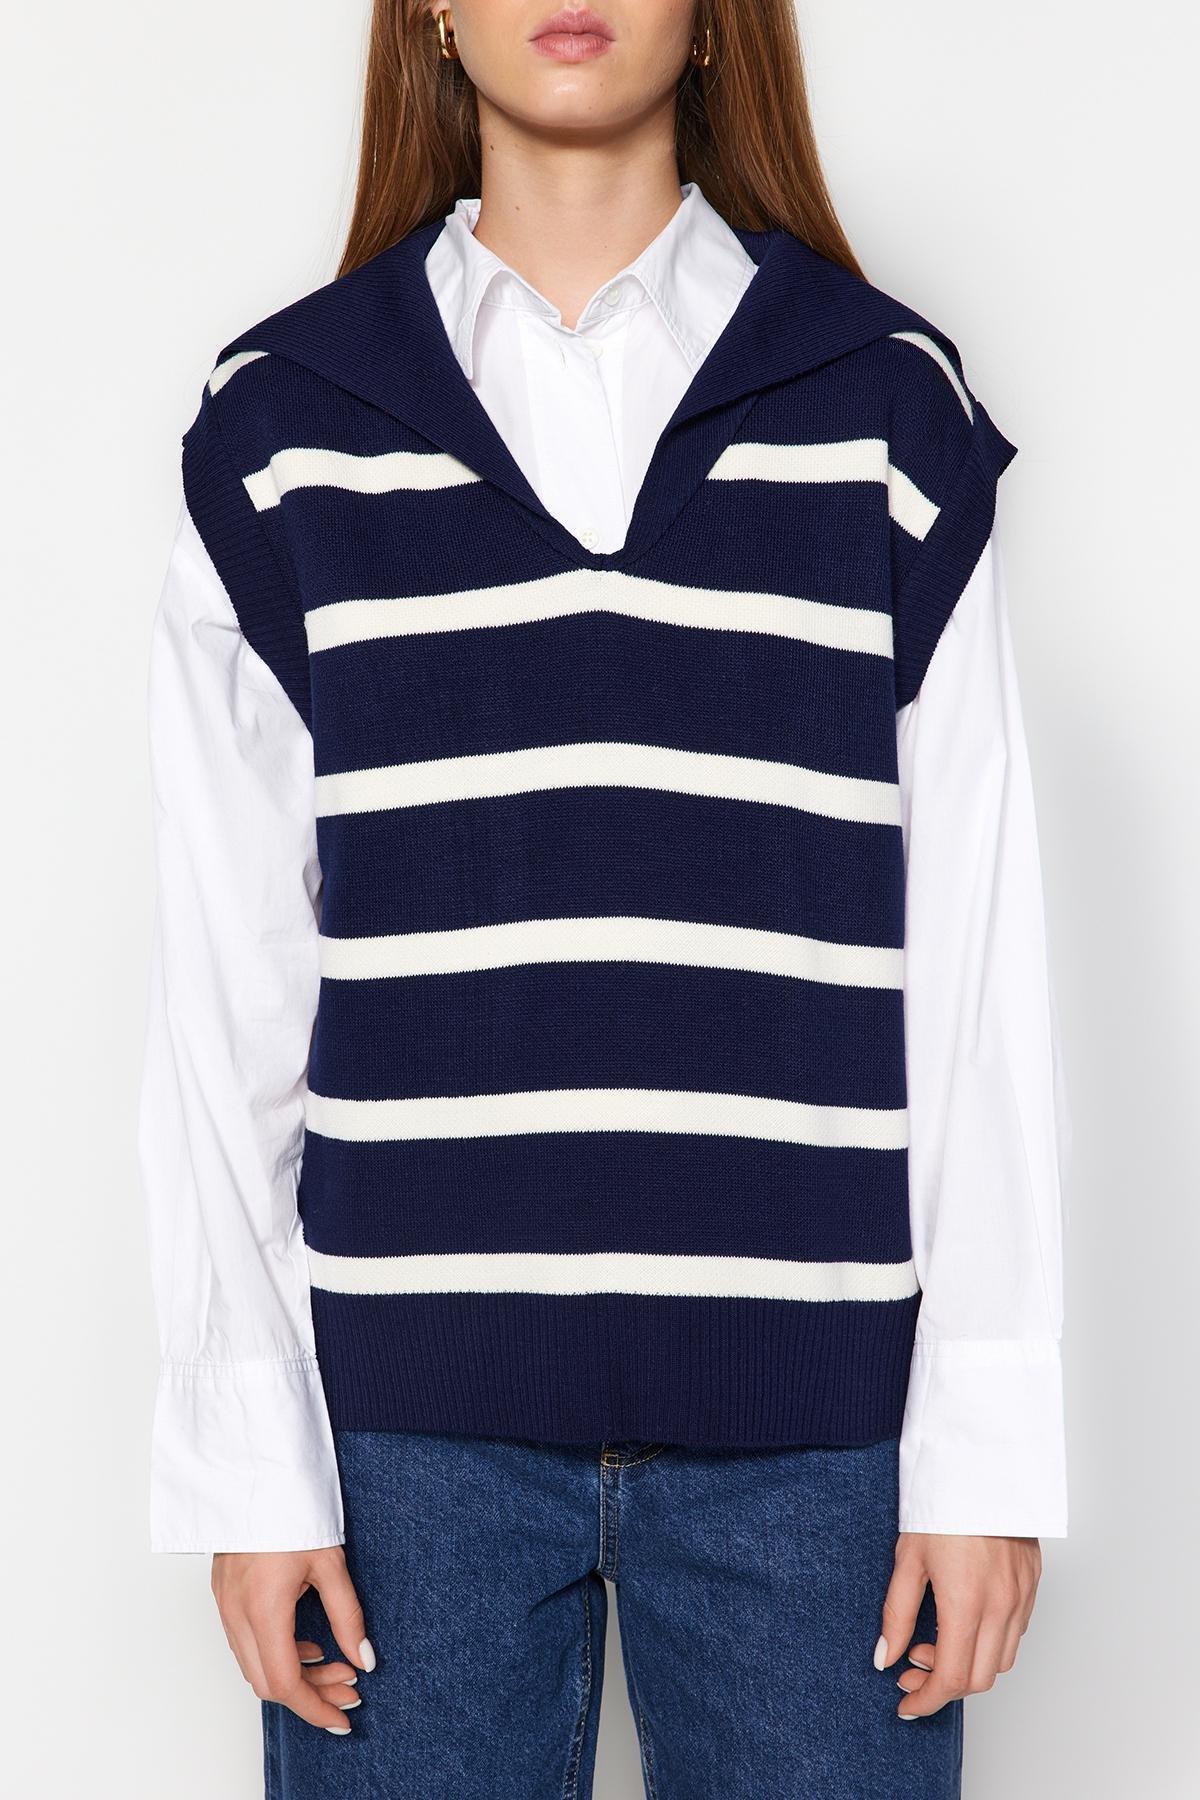 Trendyol - Navy Striped Collar Knitwear Sweater